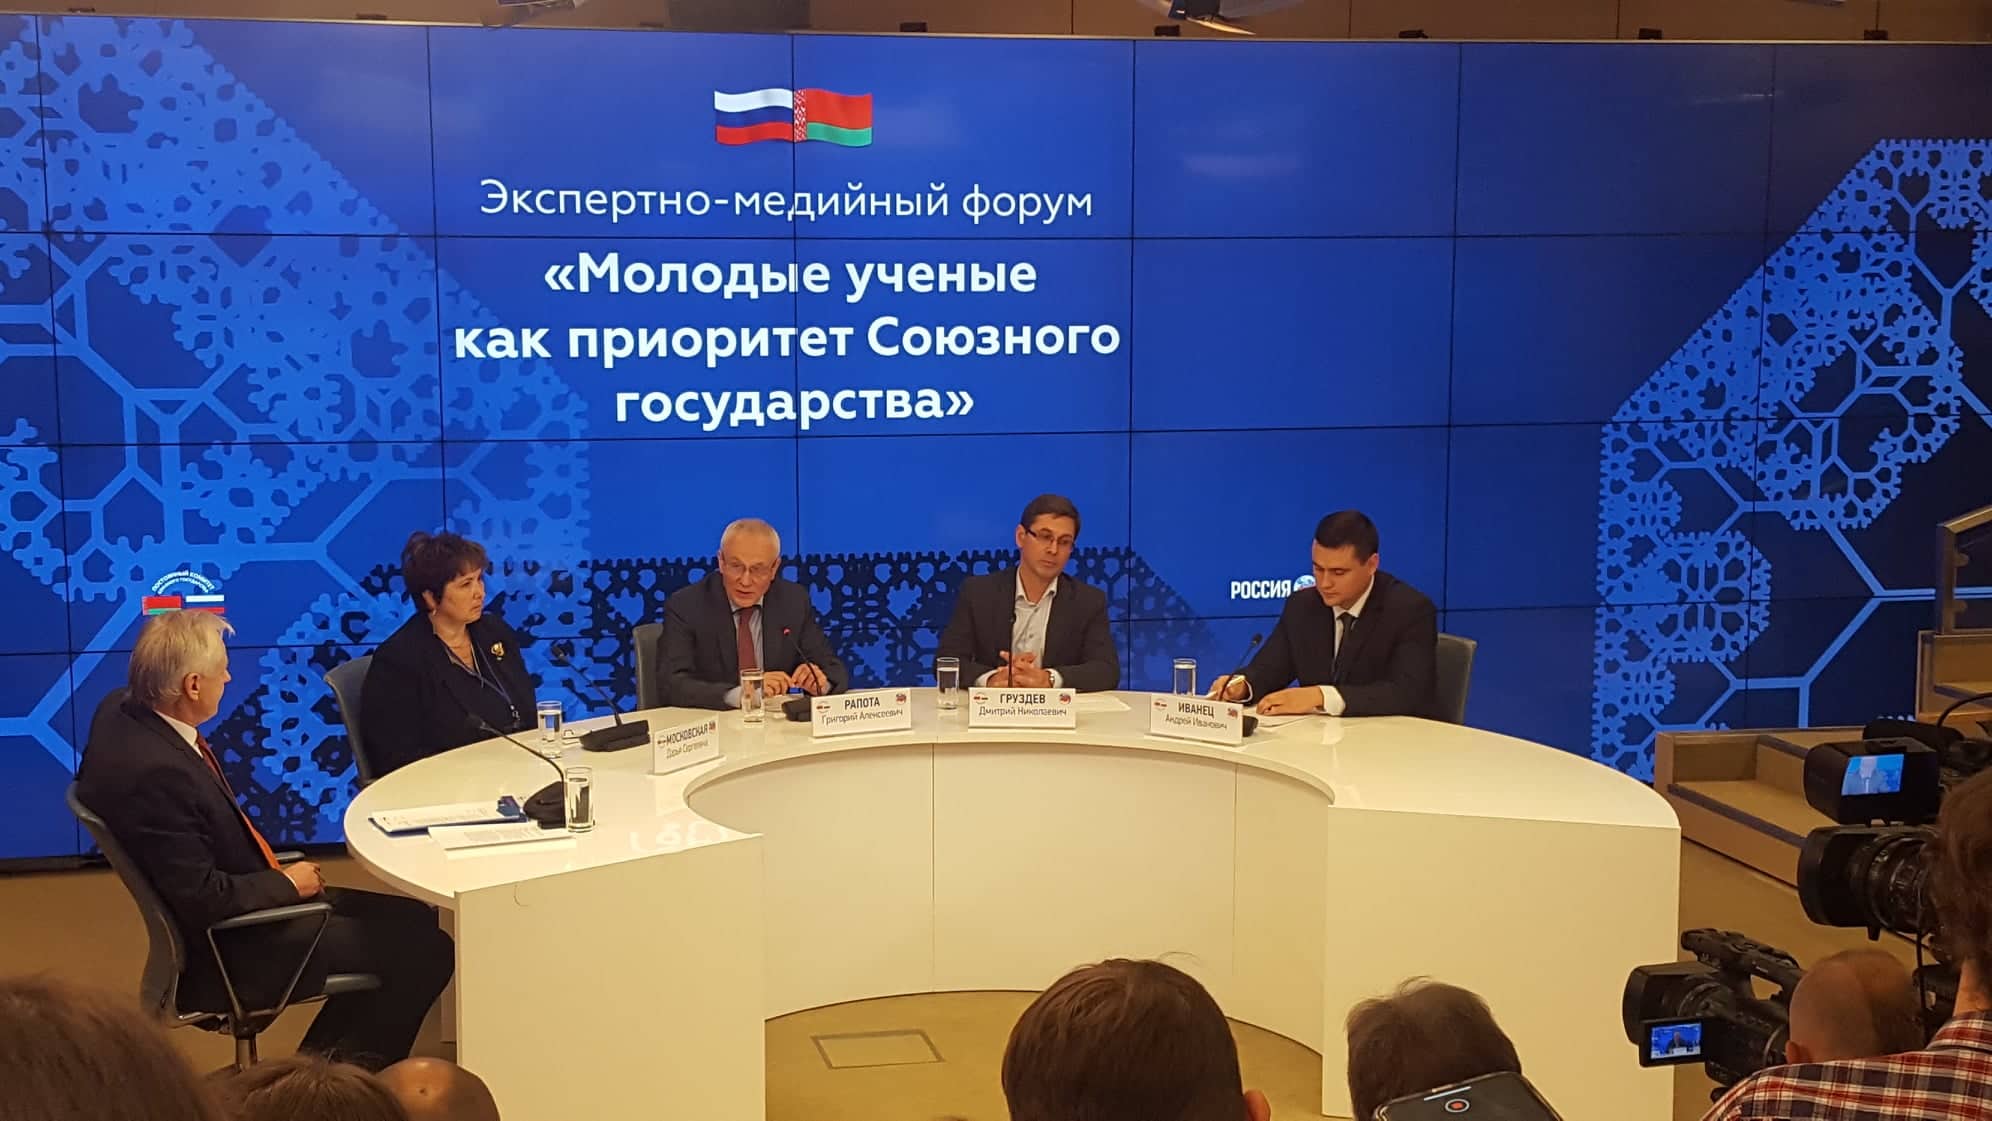  В Москве стартовал экспертно-медийный форум «Молодые ученые как приоритет Союзного государства»